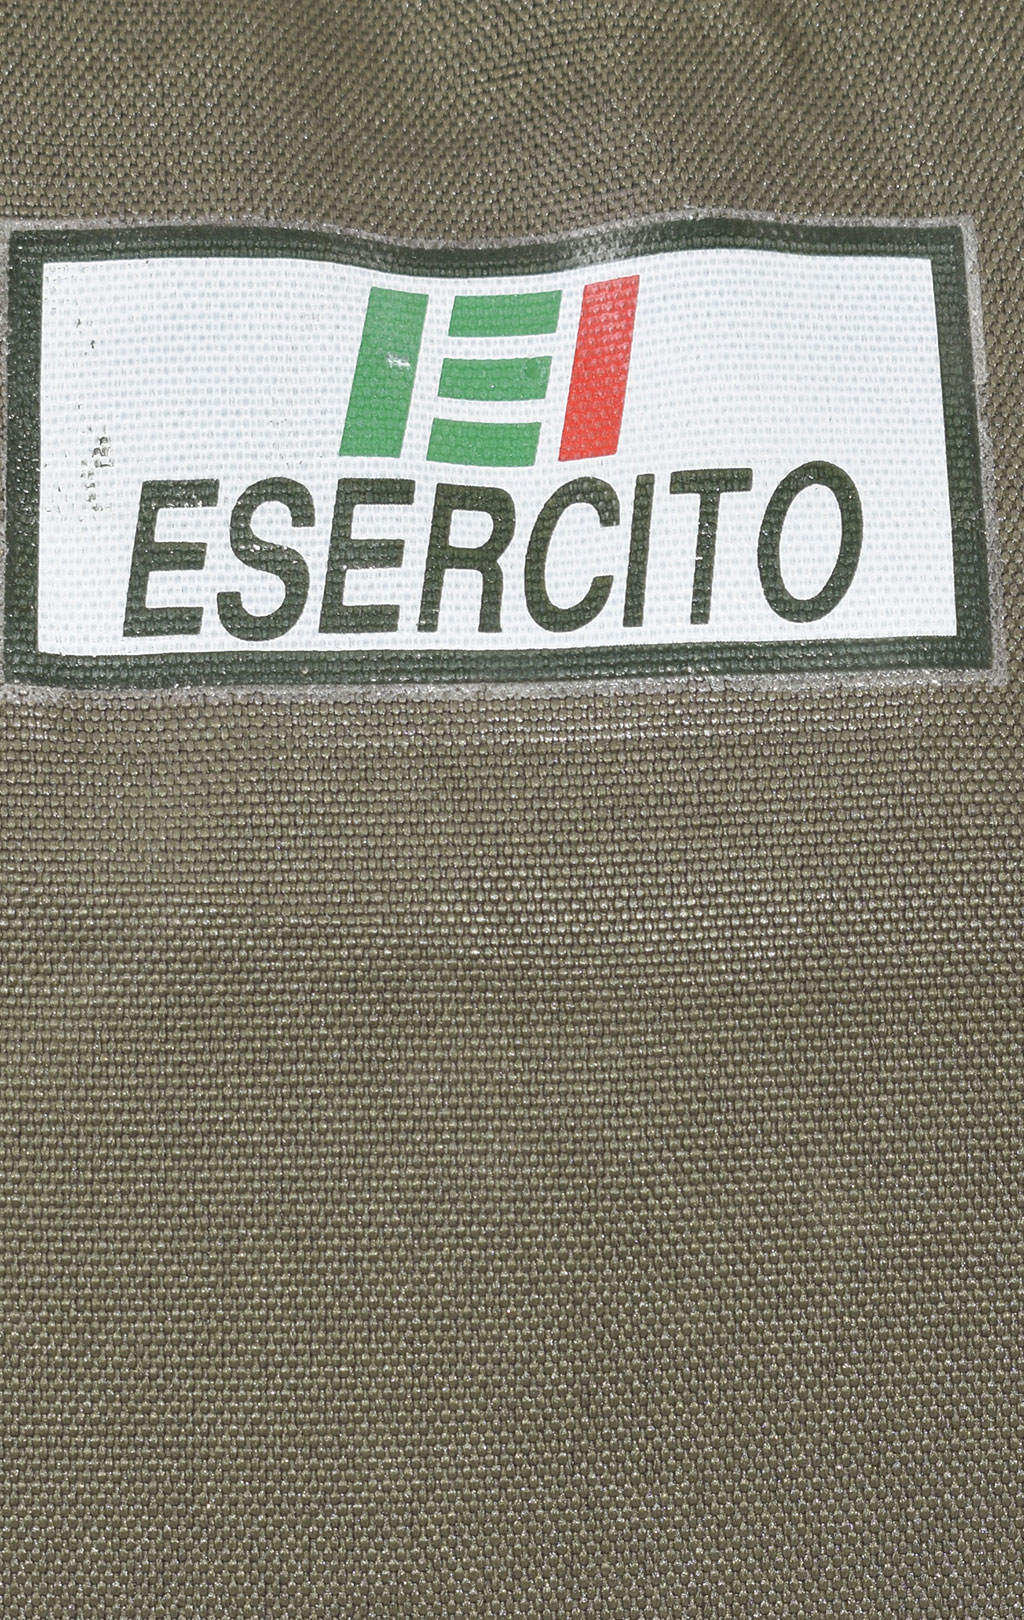 Сумка вещевая армейская ESERCITO 45x25x30 olive б/у Италия